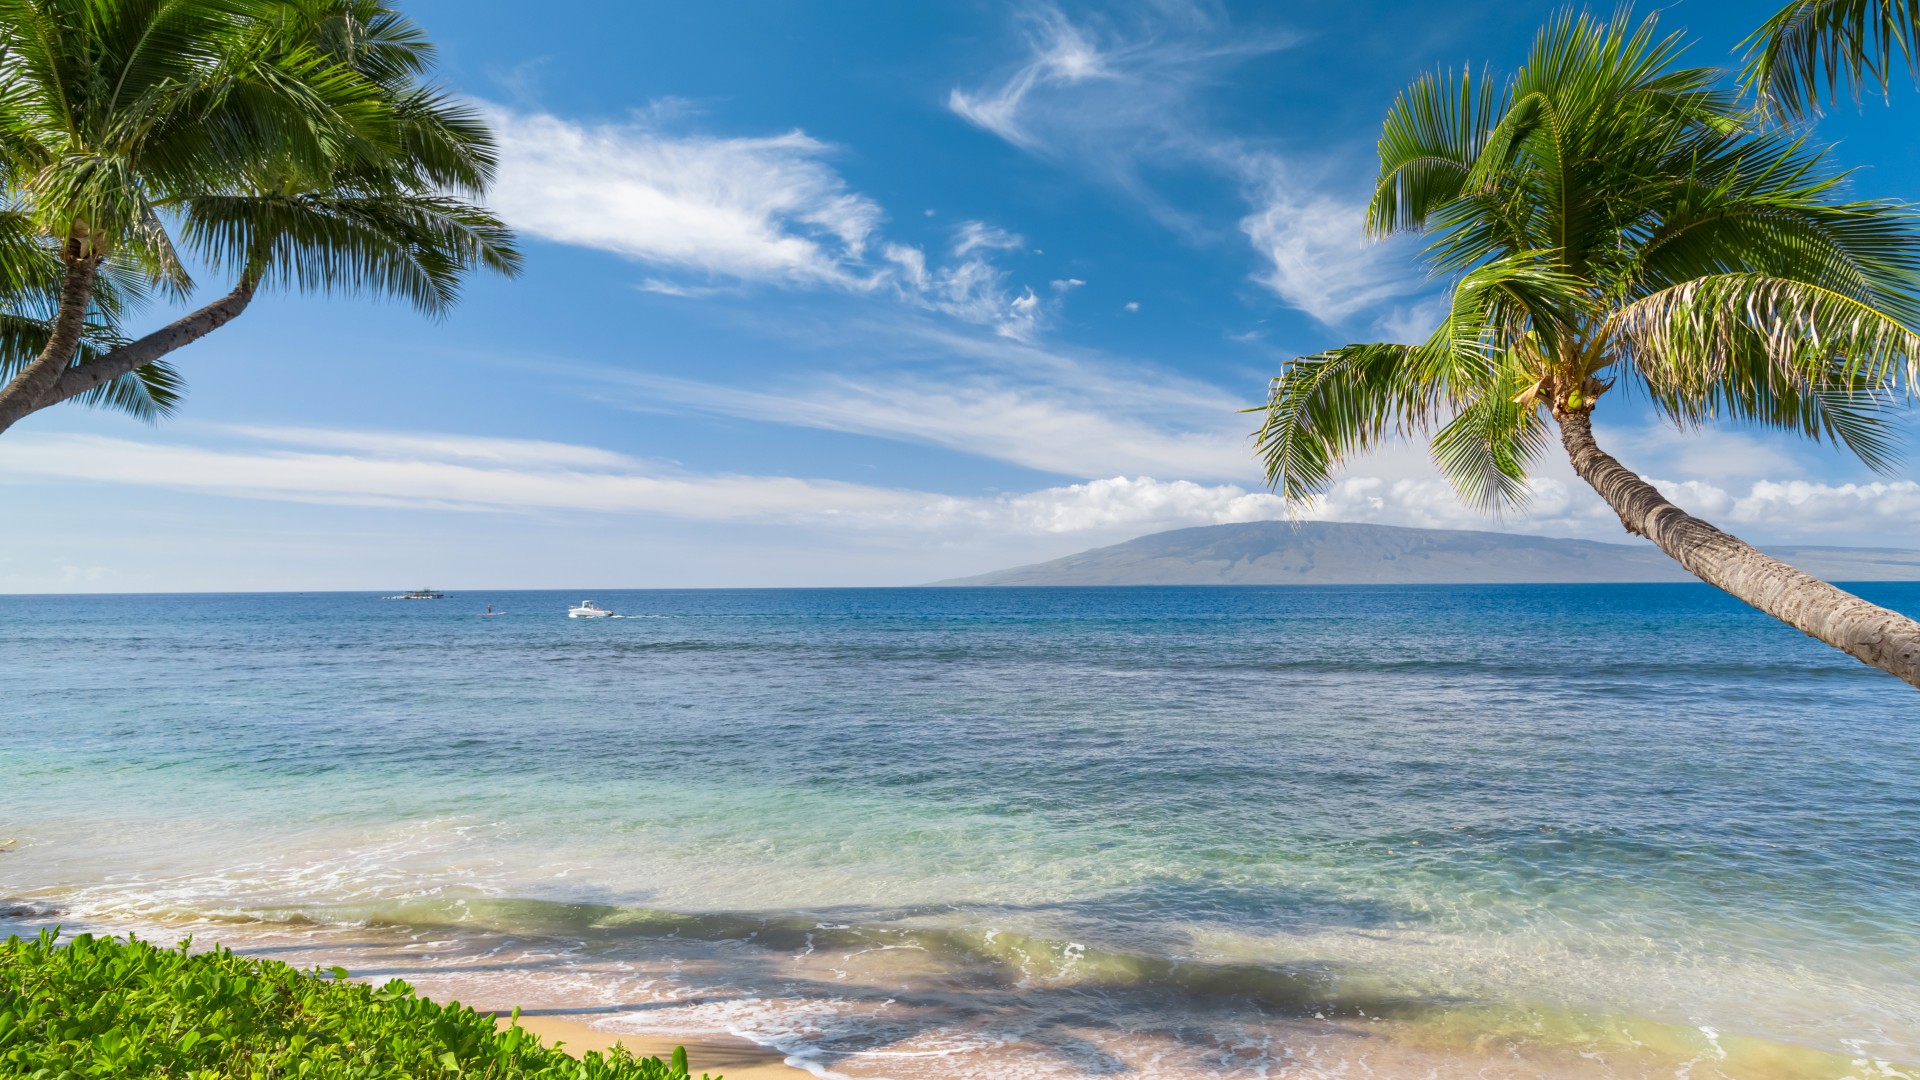 夏威夷 热带海岸风景桌面壁纸高清大图预览19x1080 风景壁纸下载 彼岸桌面